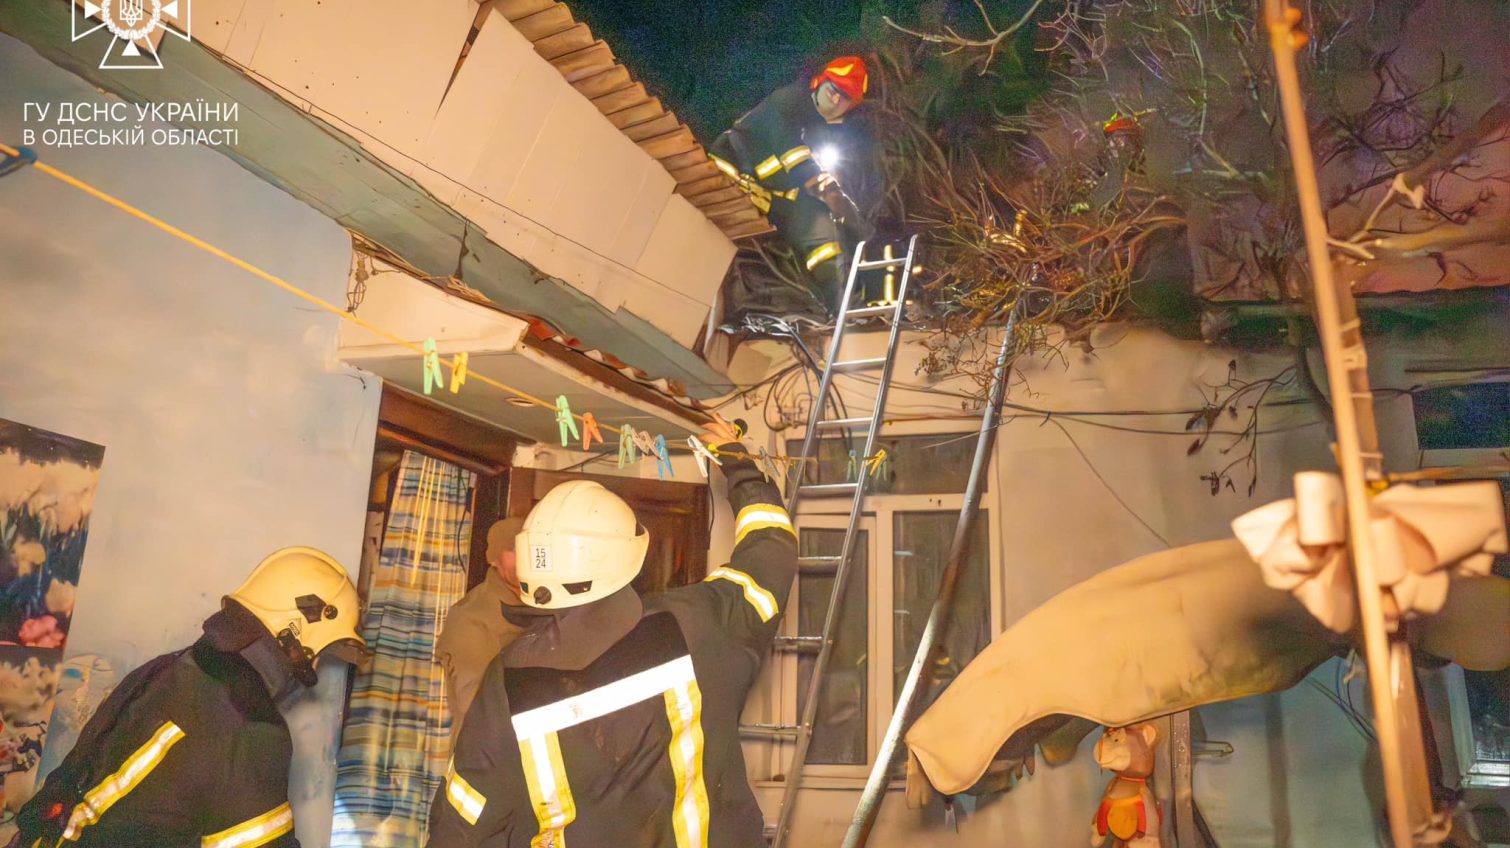 Вночі в Одесі палав приватний будинок: гасили 13 вогнеборців (фото) «фото»